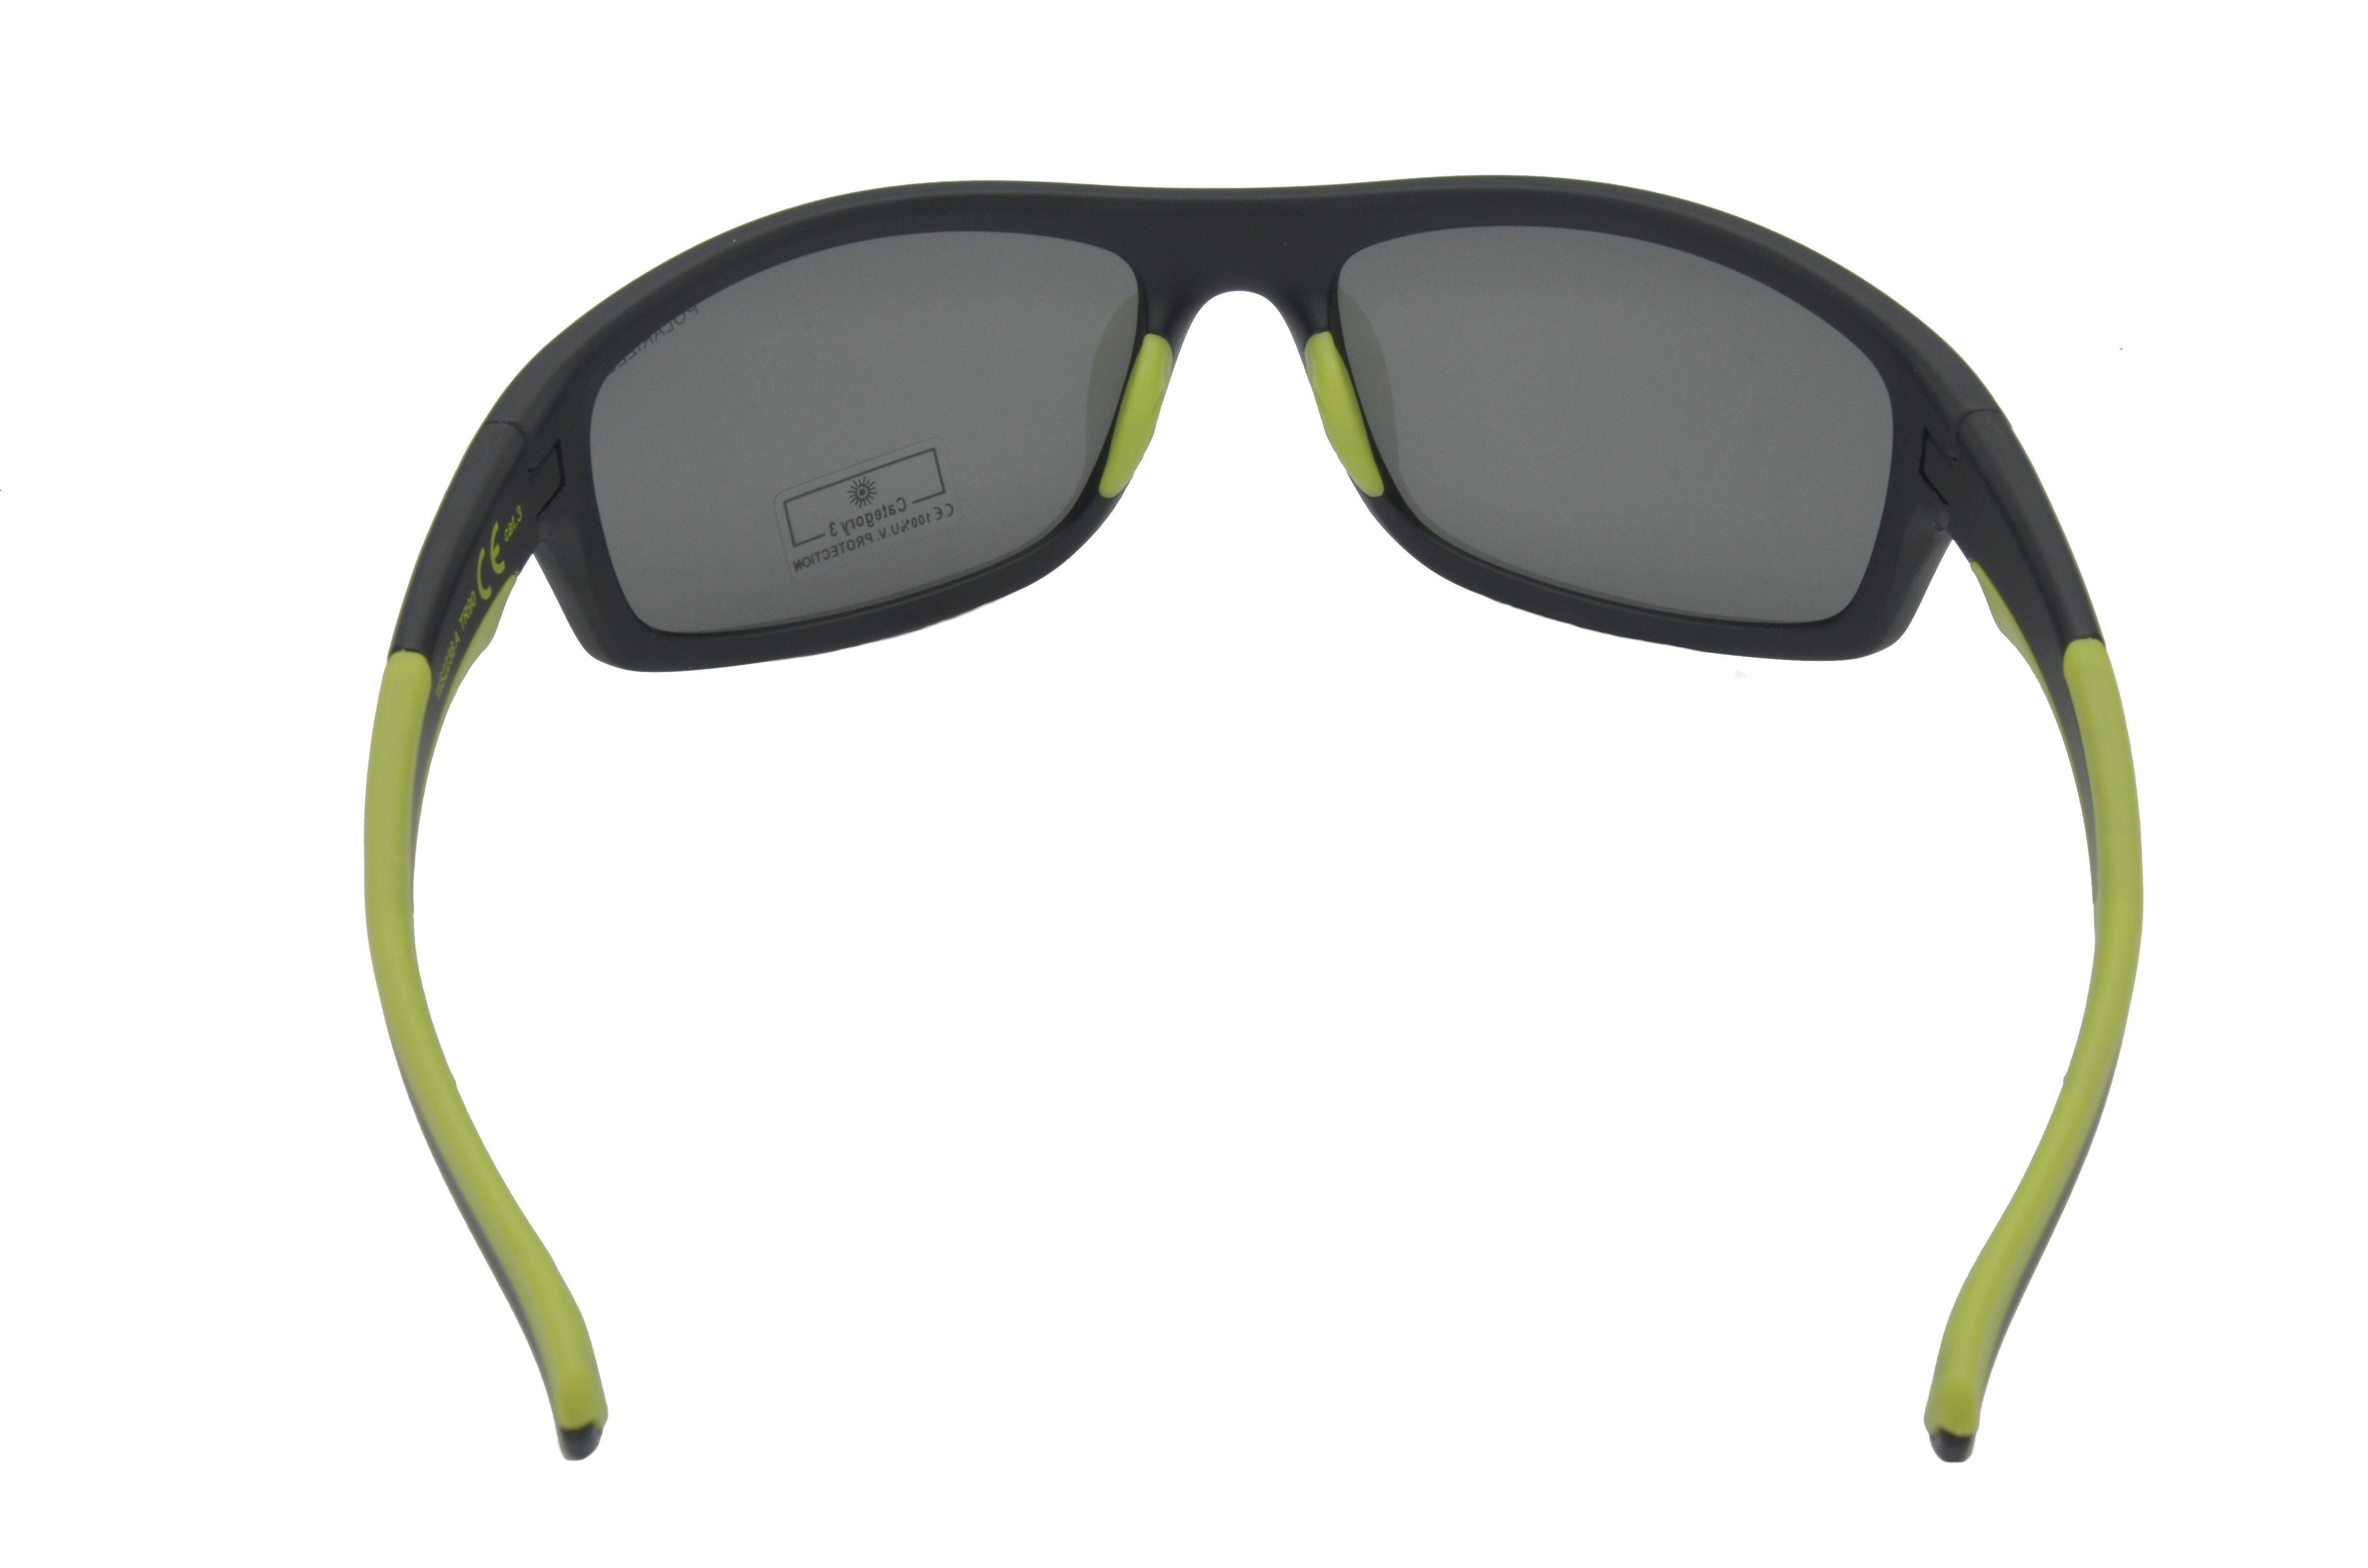 Gamswild Sportbrille TR90 -orange, / Unisex, -grün polarisiert, Herren schwarz-rot, blau, Skibrille schwarz-grün Sonnenbrille Damen WS2238 grau, Fahrradbrille